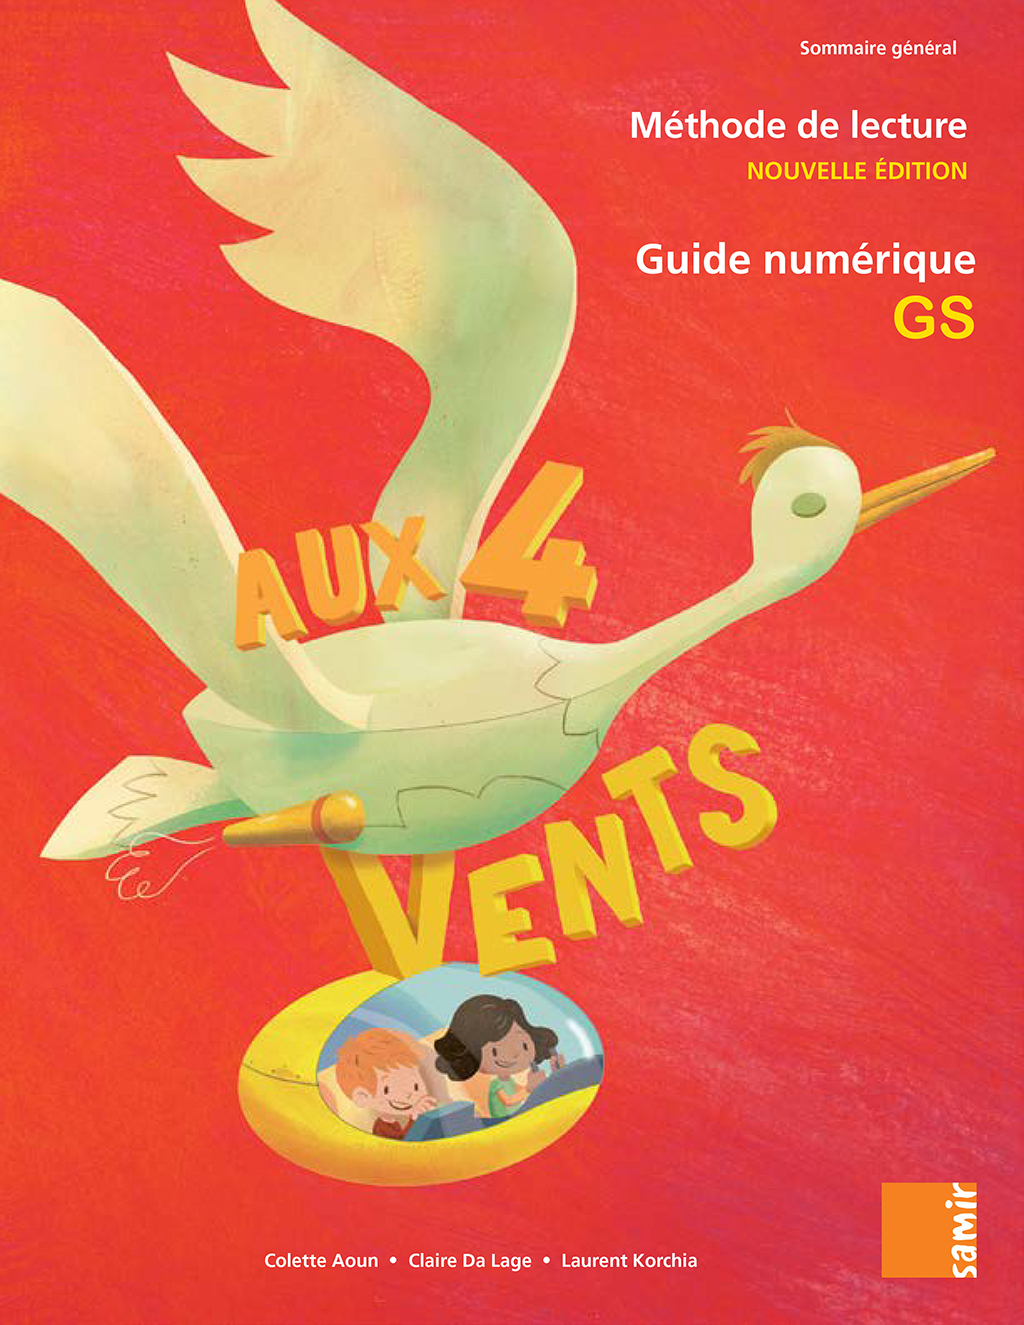 Samir Éditeur - Guide numérique GS - Couverture